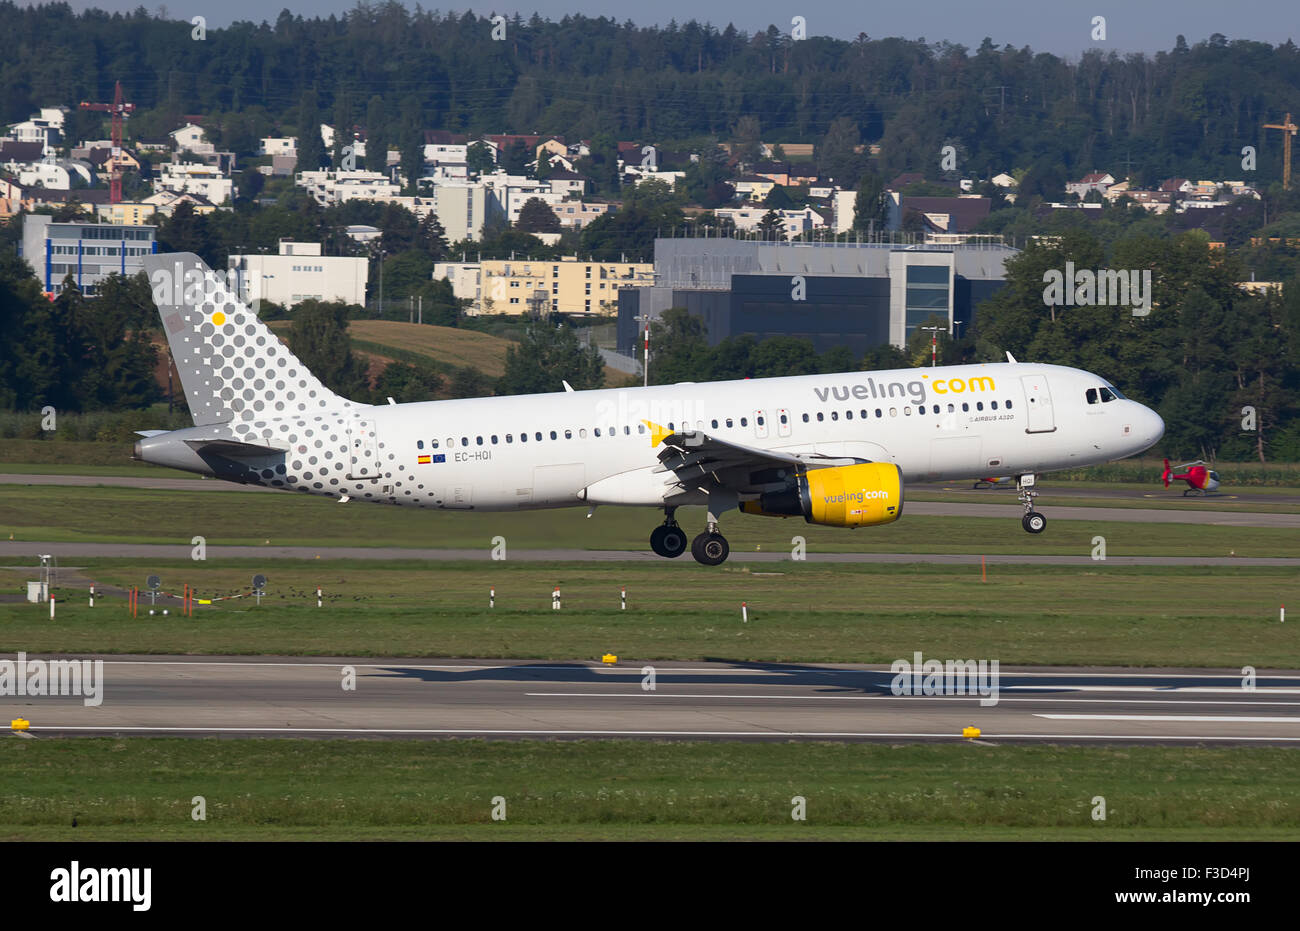 ZURICH - AUGUST 23: A-320 Vueling landing in Zurich airport after short haul flight on July 18, 2015 in Zurich, Switzerland. Vue Stock Photo